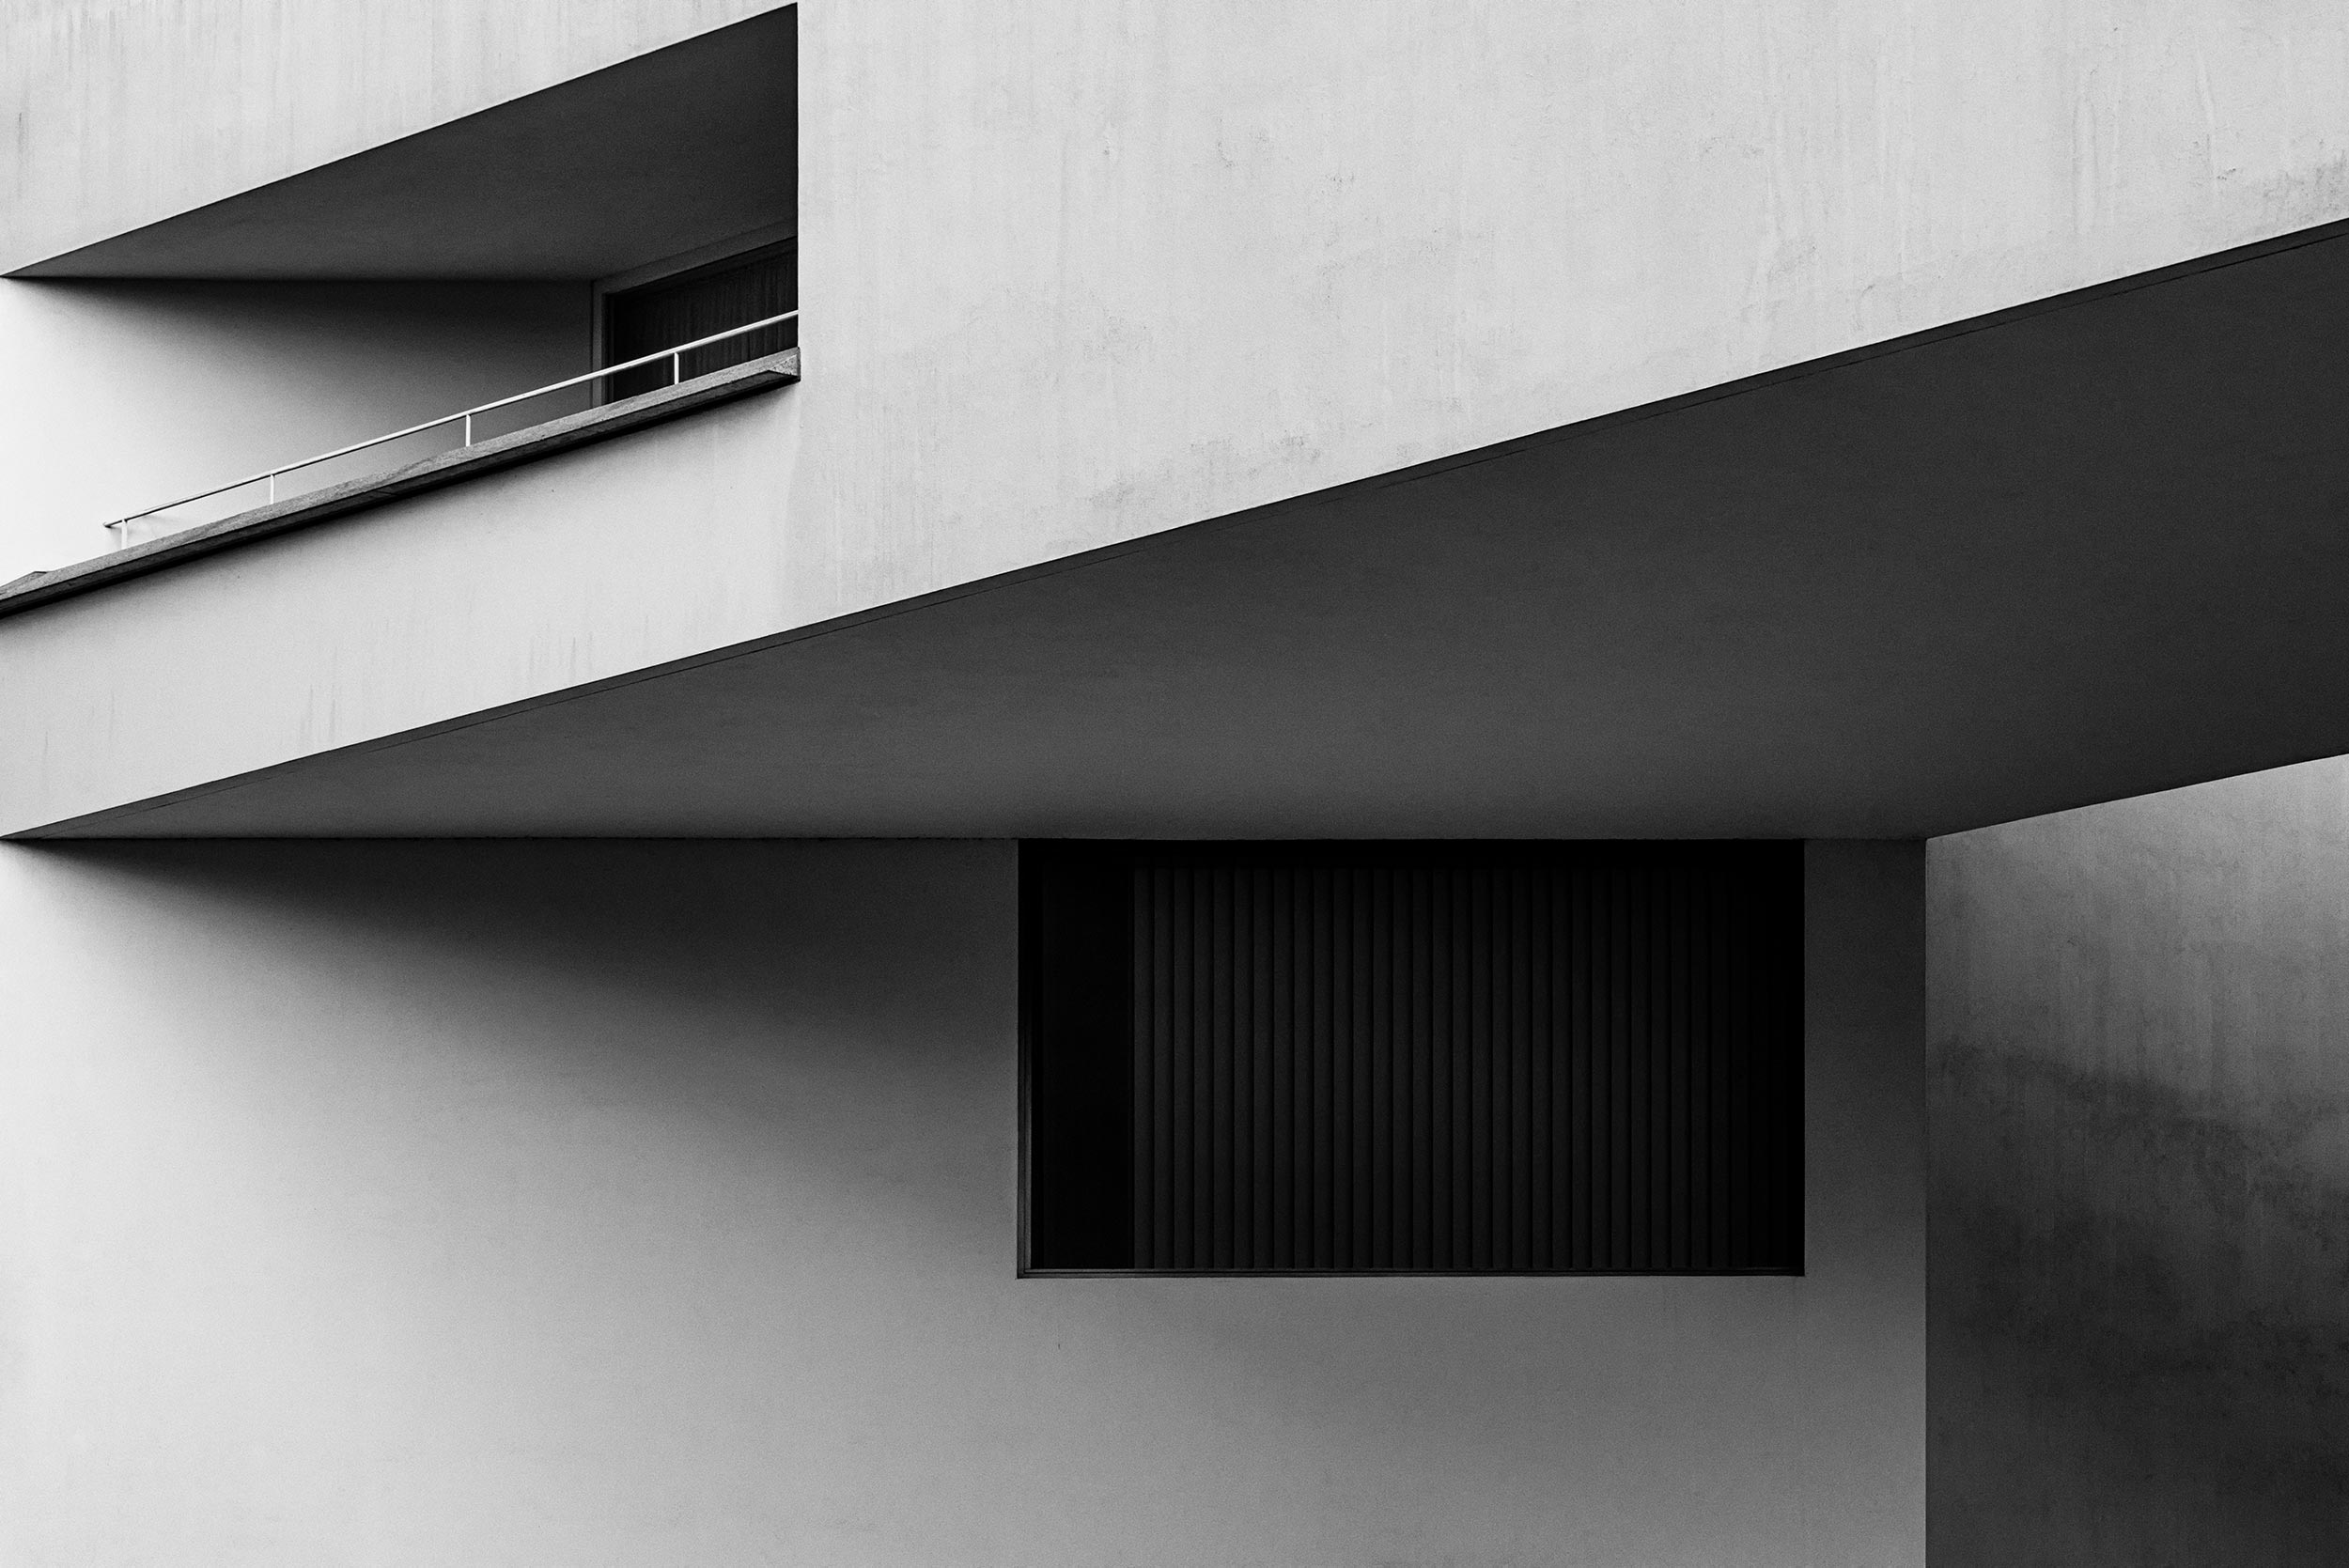 Landesvertretung Baden-Württemberg, Berlin - Dietrich Bangert - Black & White Fine Art Architecture Photography